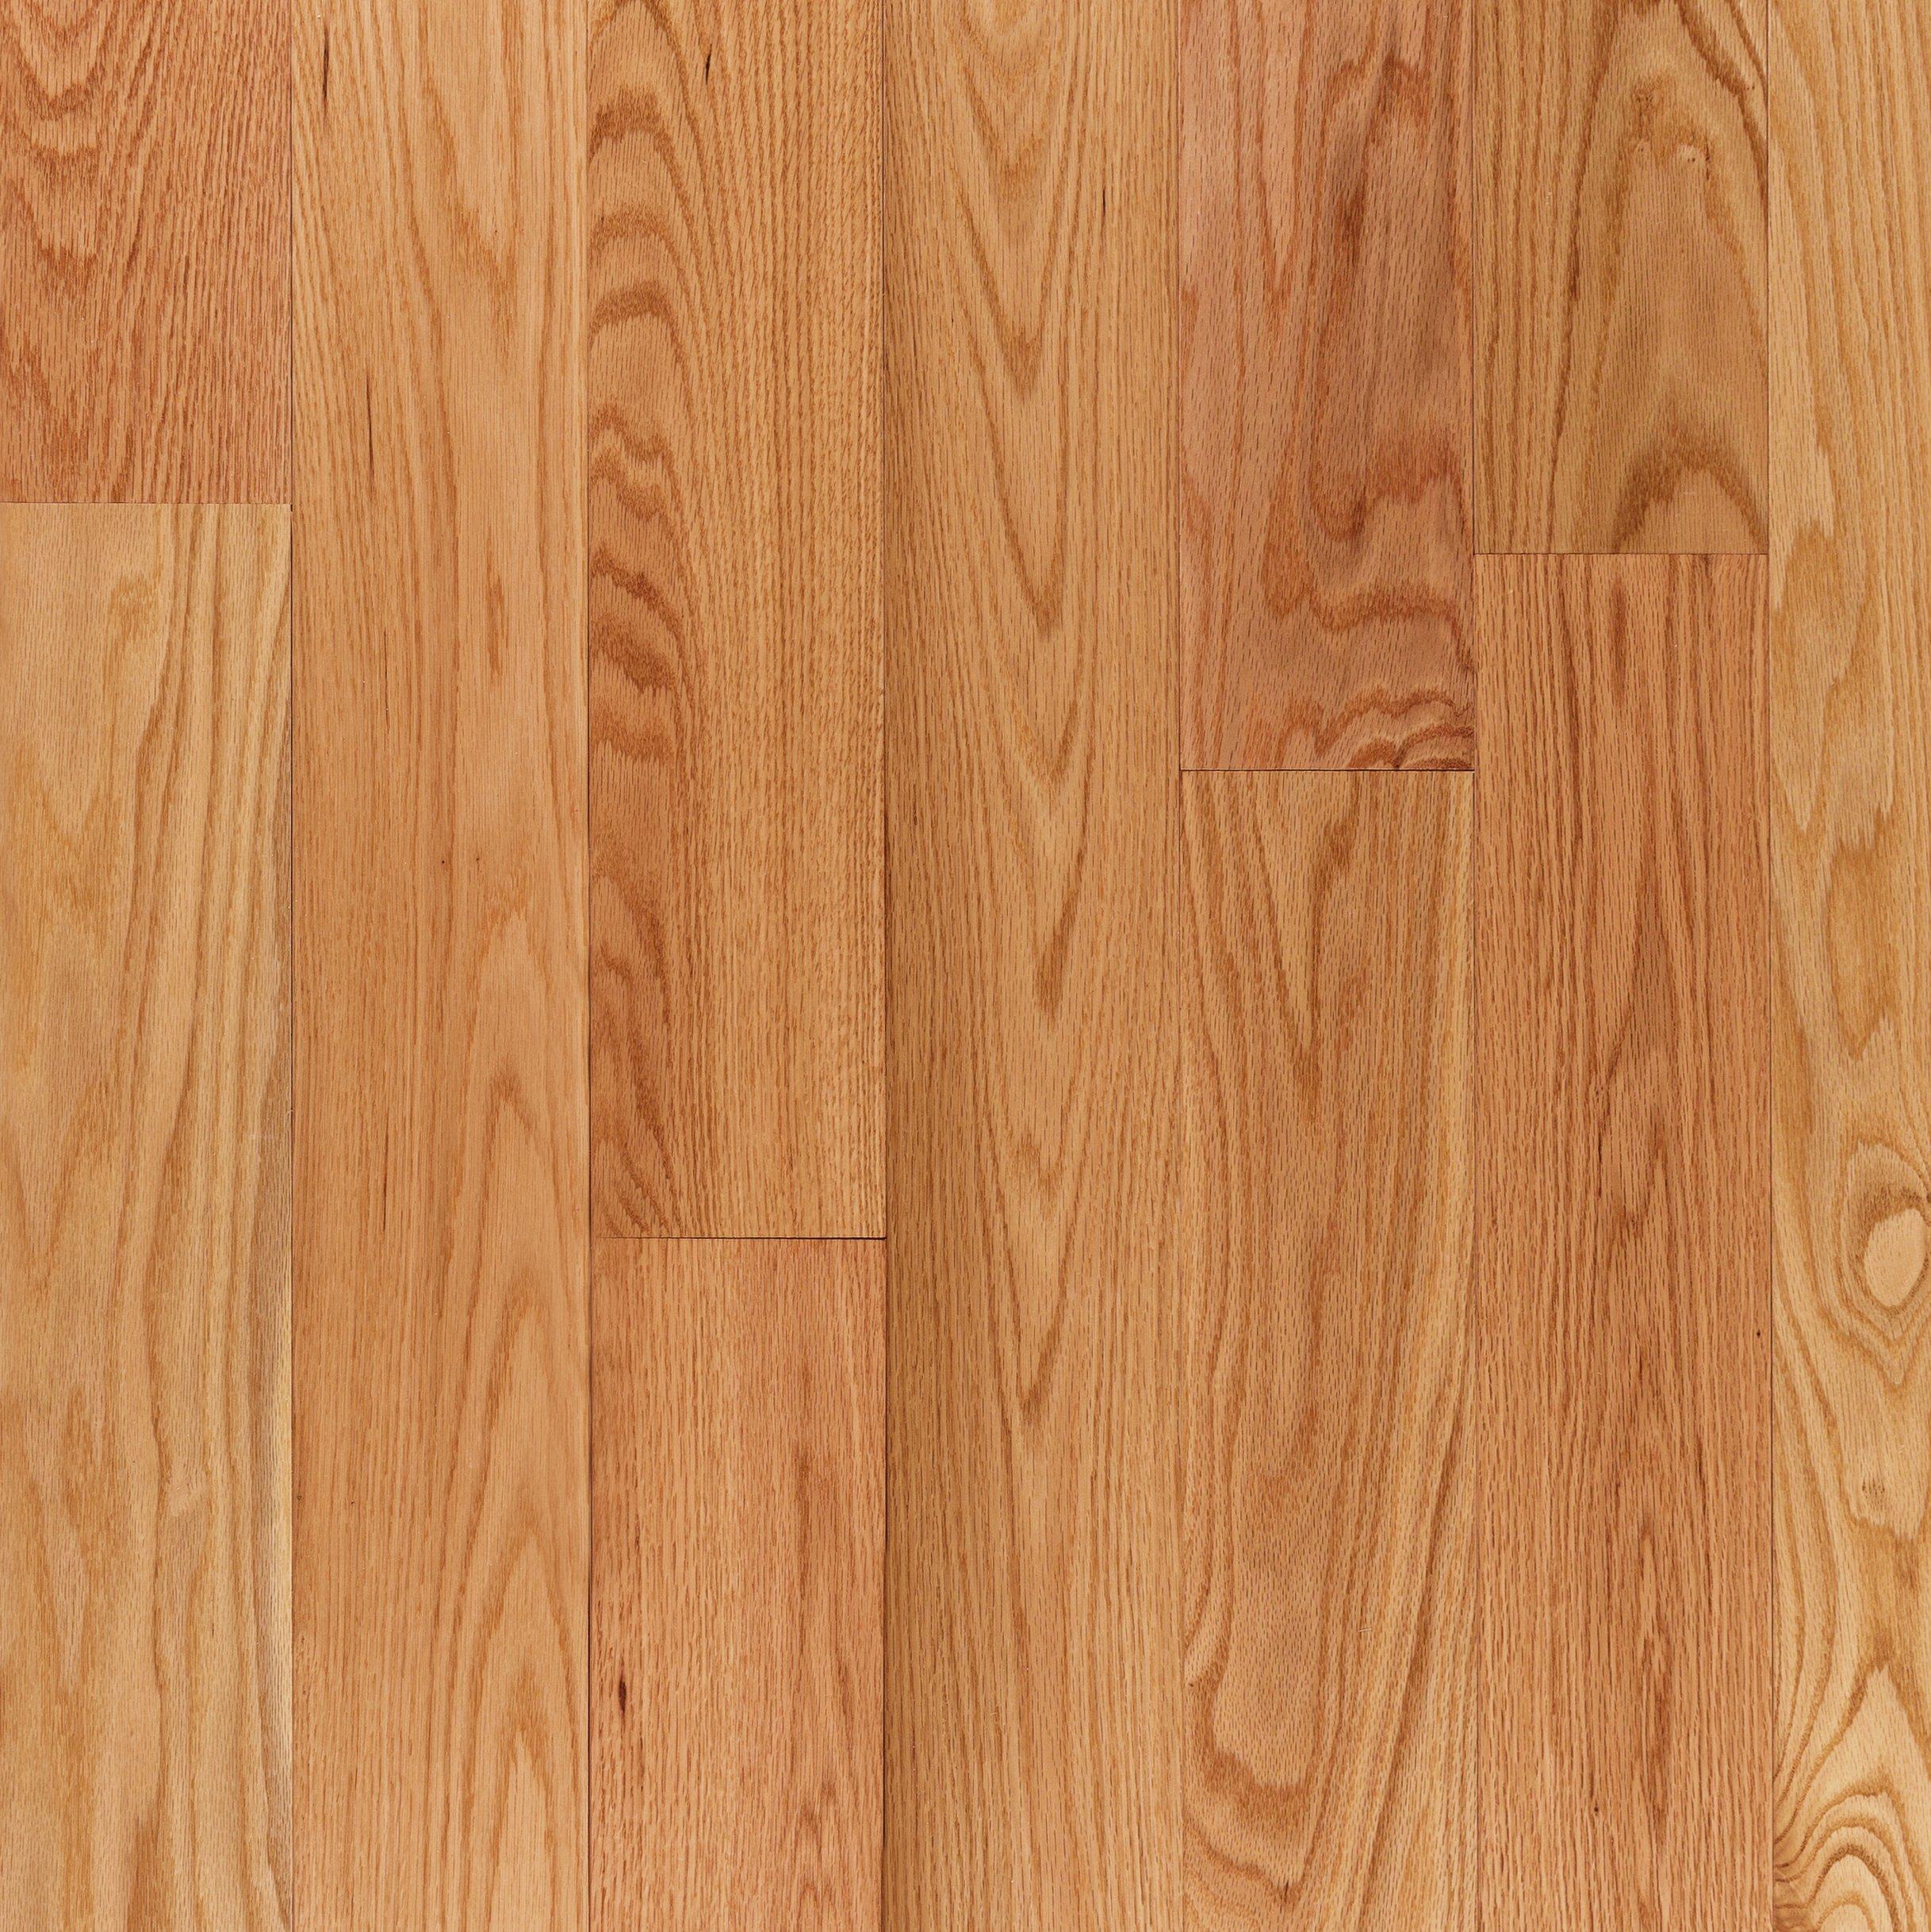 Red Oak Smooth Solid Hardwood, Red Oak Natural Solid Hardwood Flooring